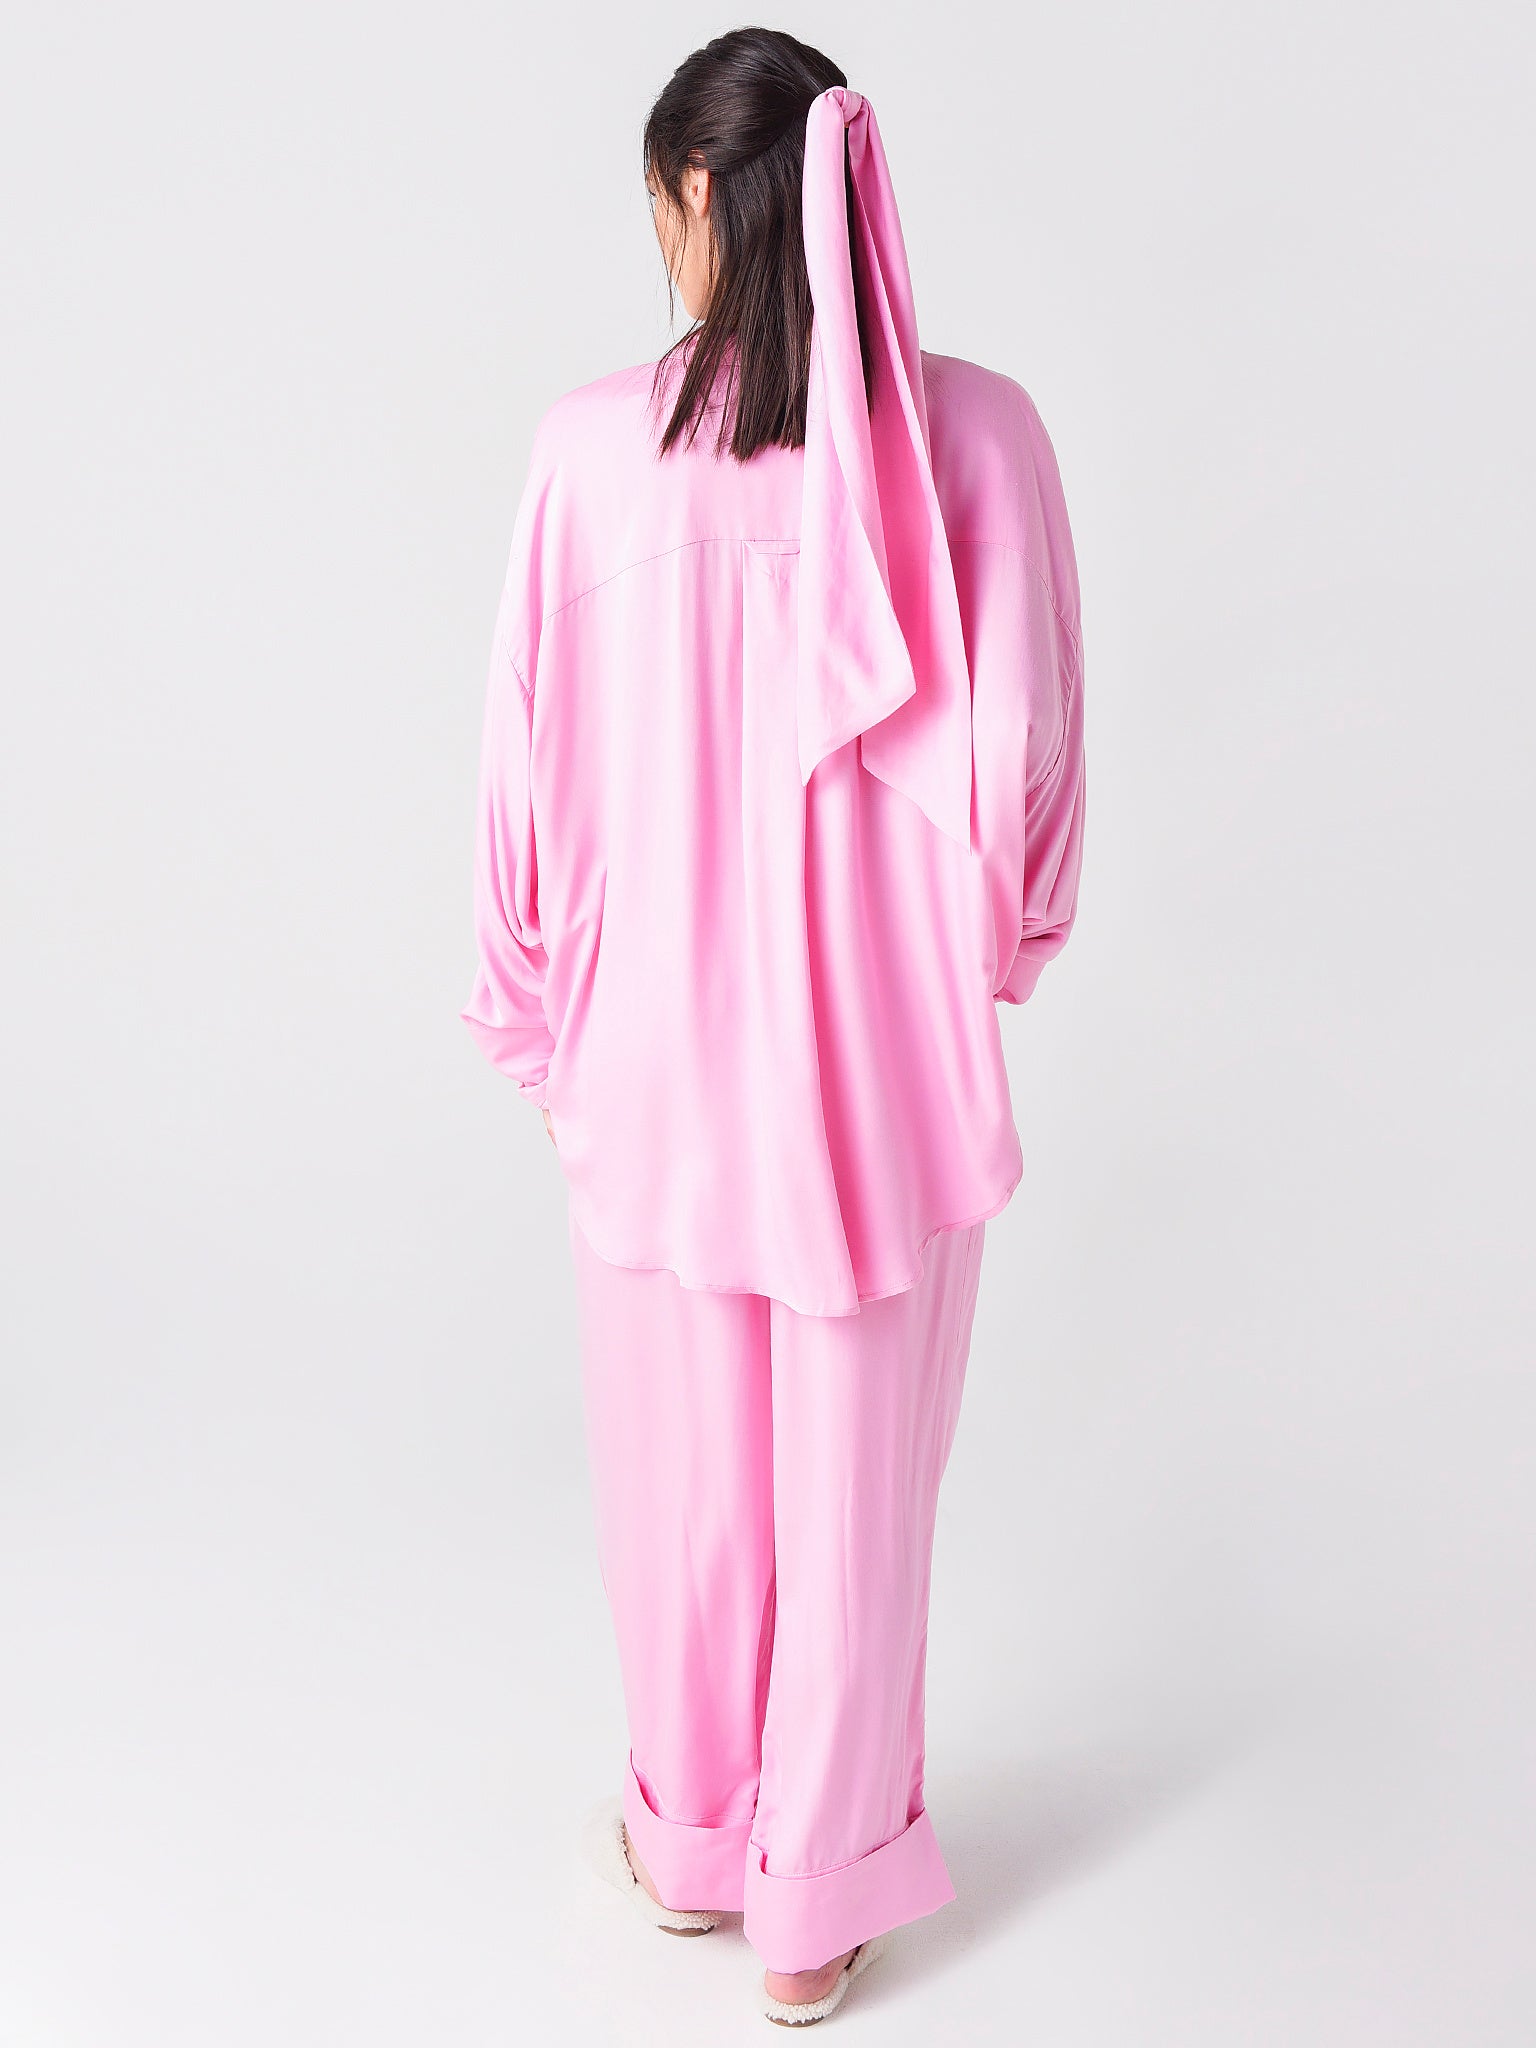 Pink pajama set  Sizeless pajamas by Sleeper